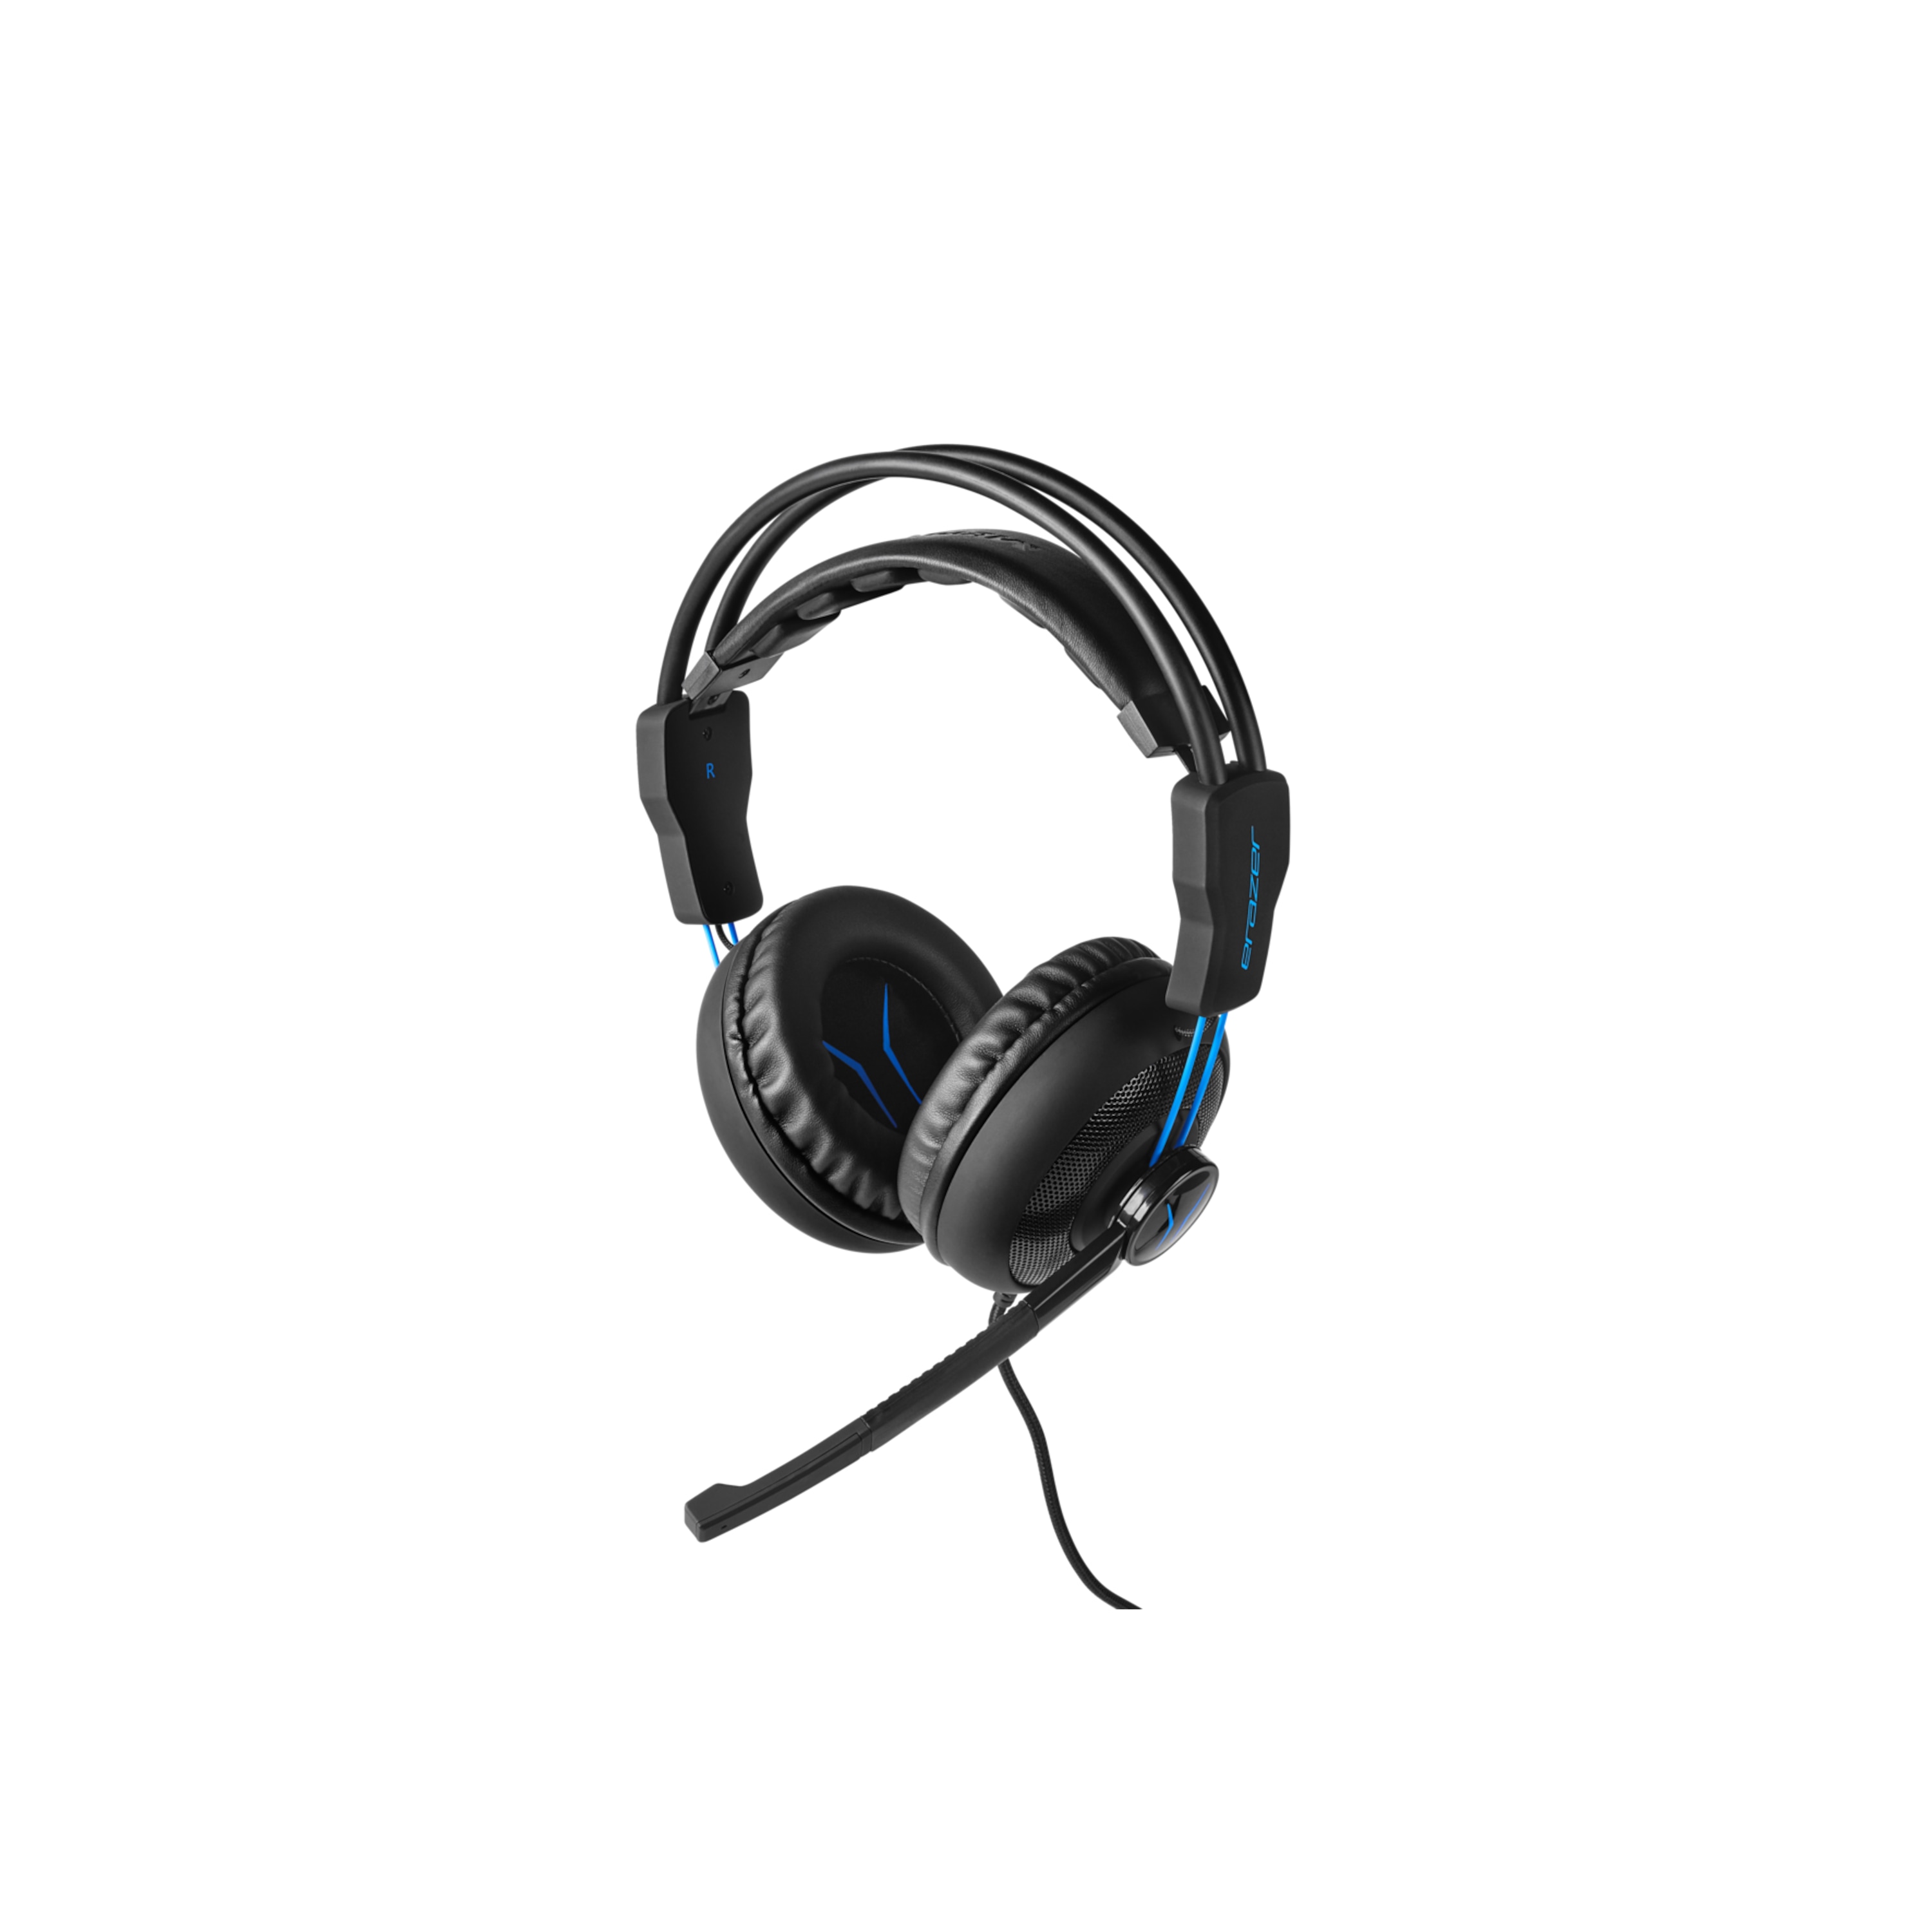 MEDION® ERAZER® P83962 Gaming Headset, überragender Klang und Lautsprecherqualität, leistungsstarker Bass, Mikrofon, Lautstärkeregelung über Kabelfernbedienung